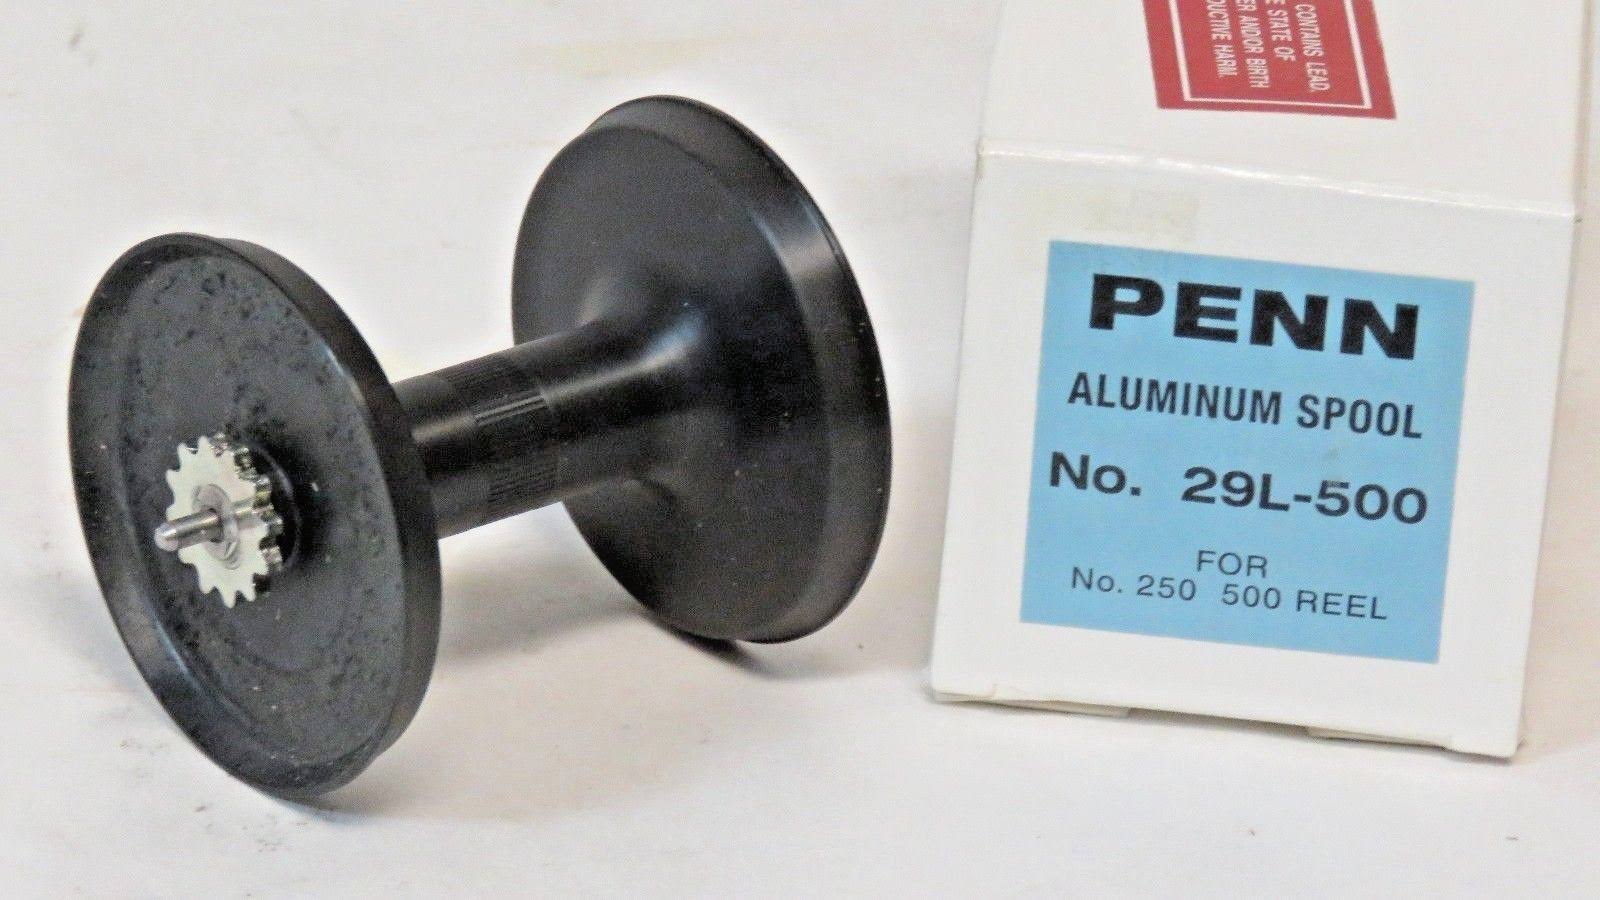 New Penn Aluminum Spool NO. 29L-500 for NO. 250 500 Reel